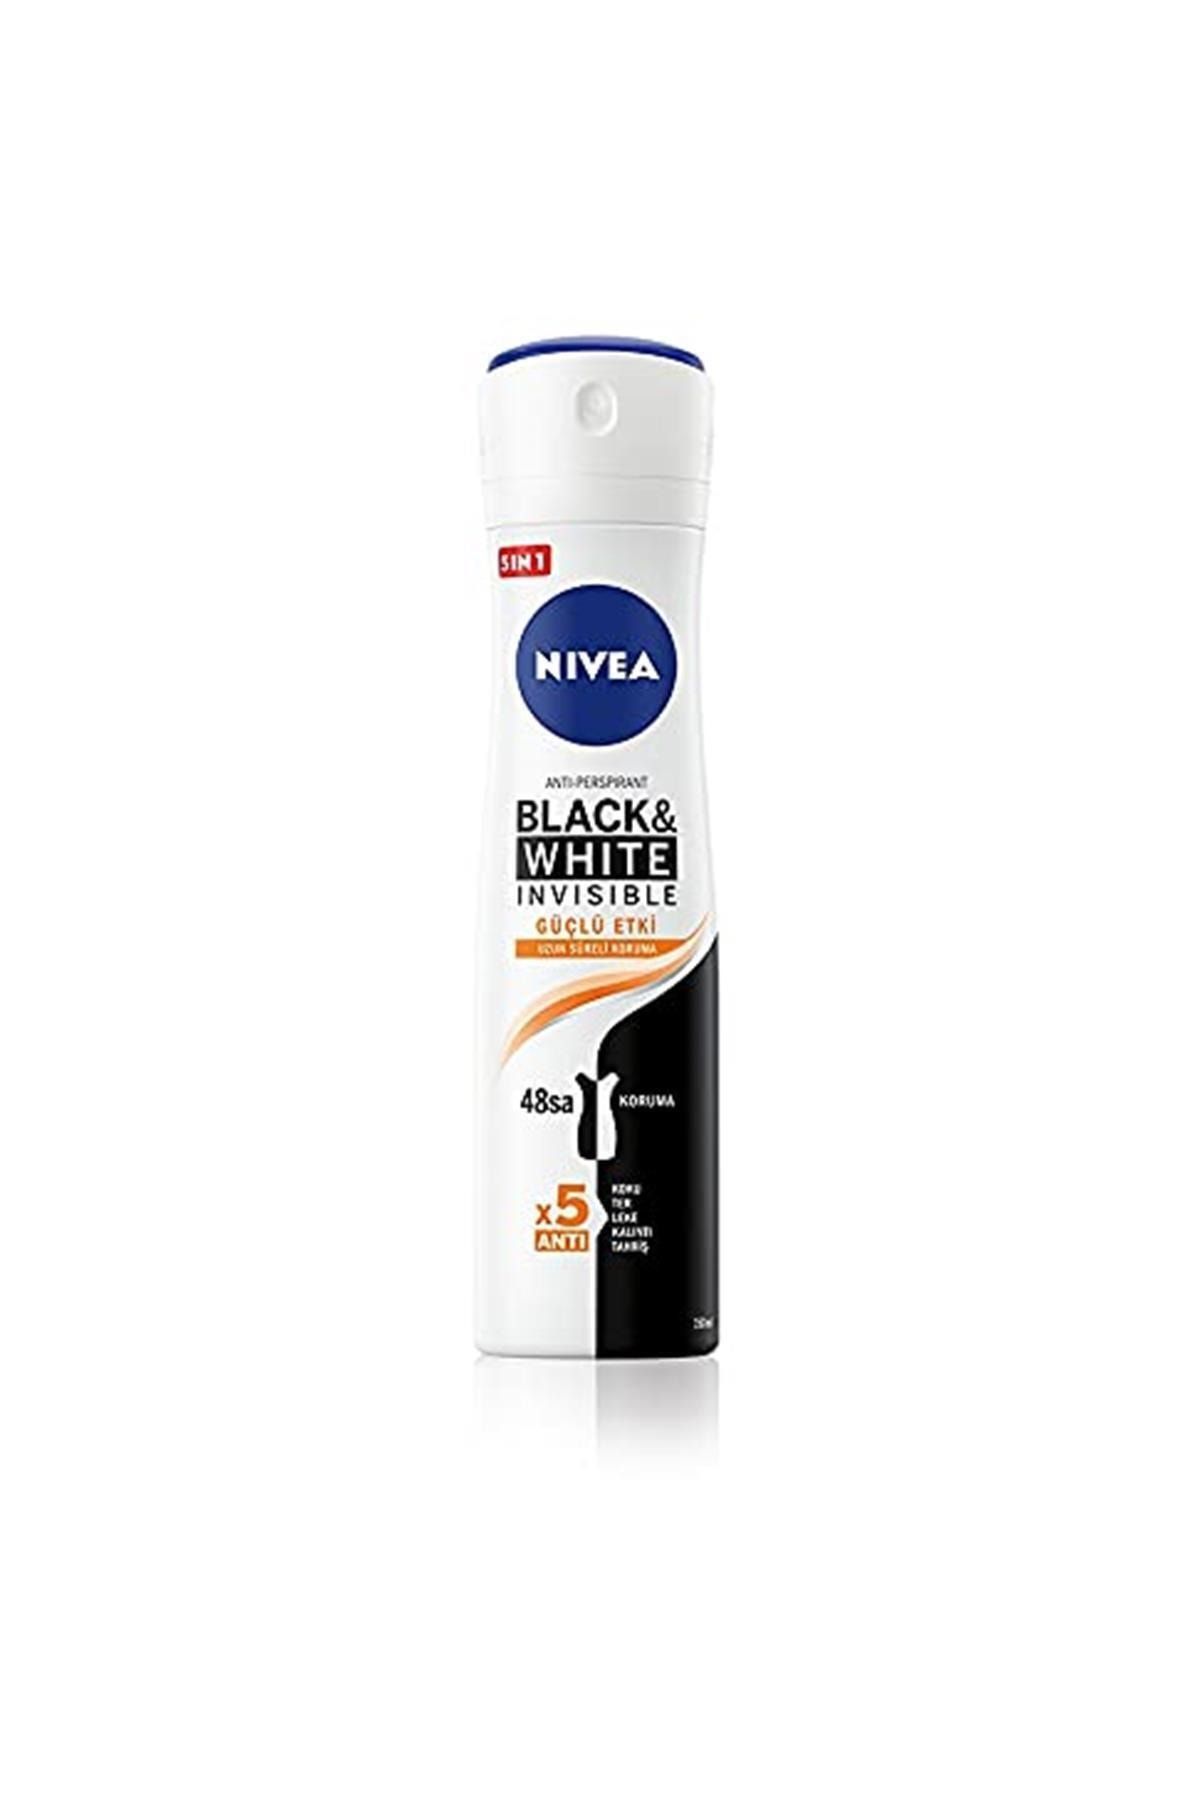 NIVEA Black White Invisible Güçlü Etki Sprey Deodorant Kadın 150 ml